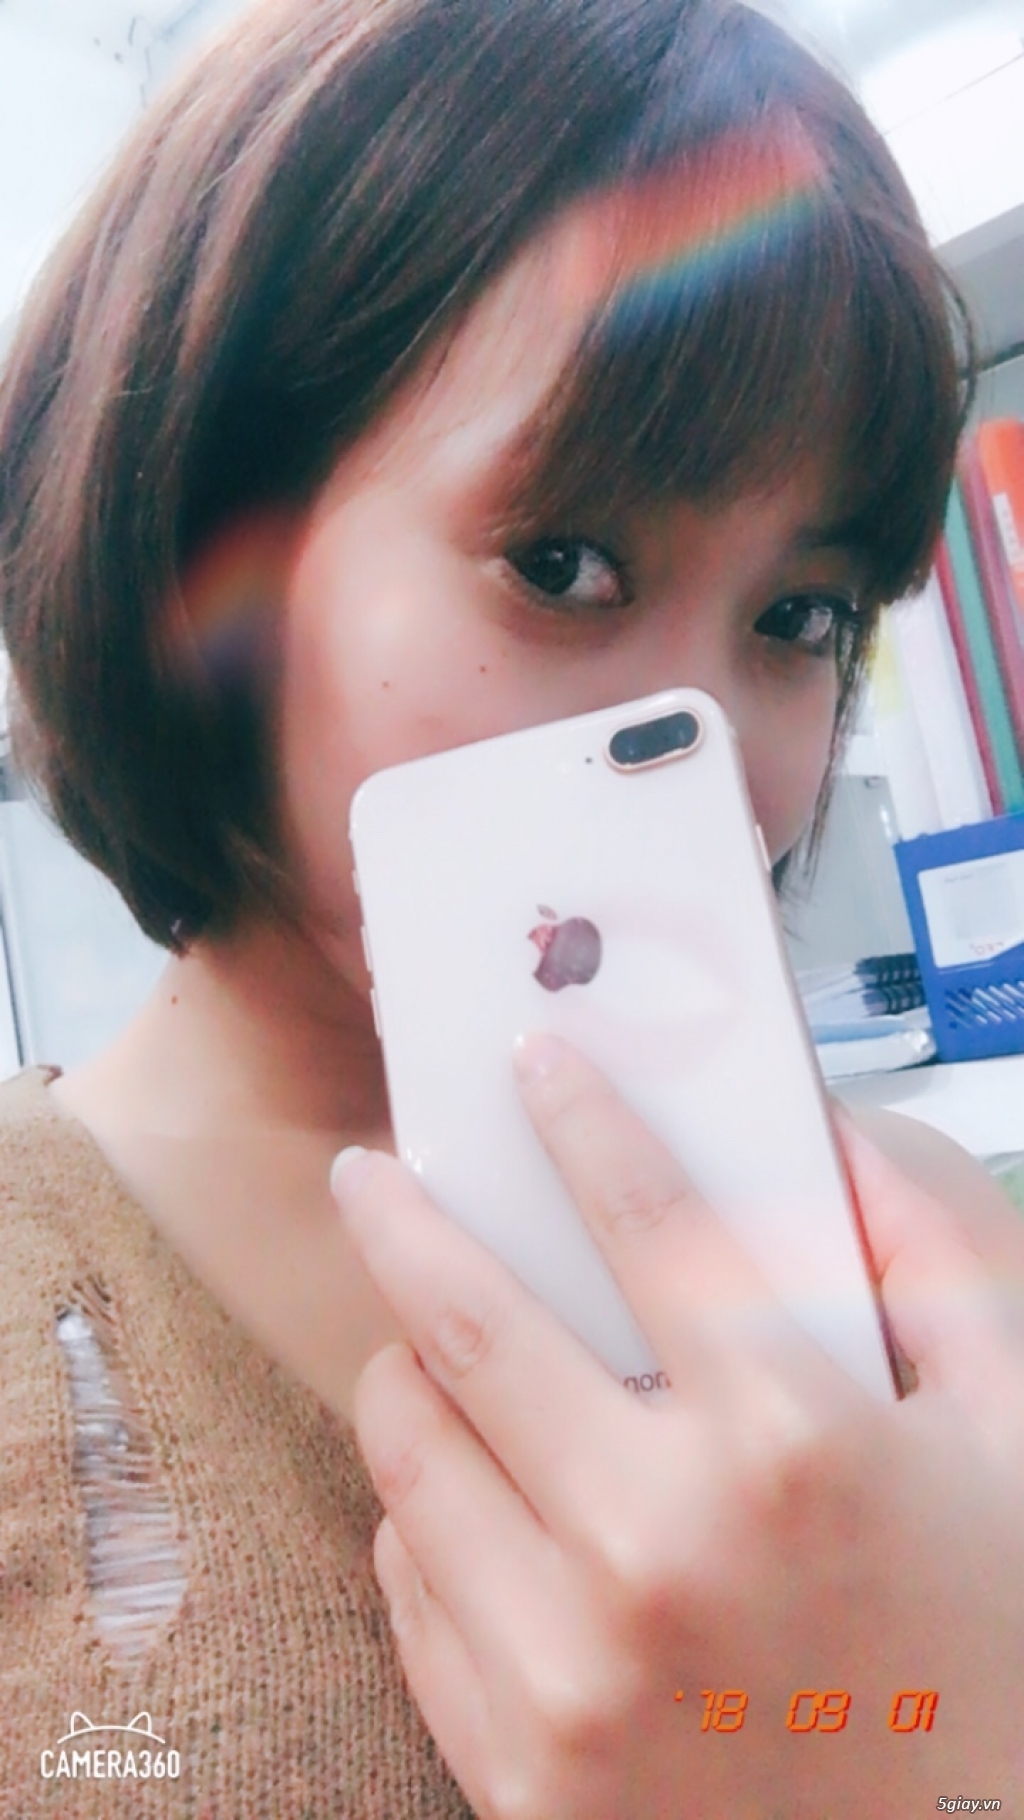 iphone 8plus 64gb vàng hồng đẹp lung linh zin như mới bảo hành - 1